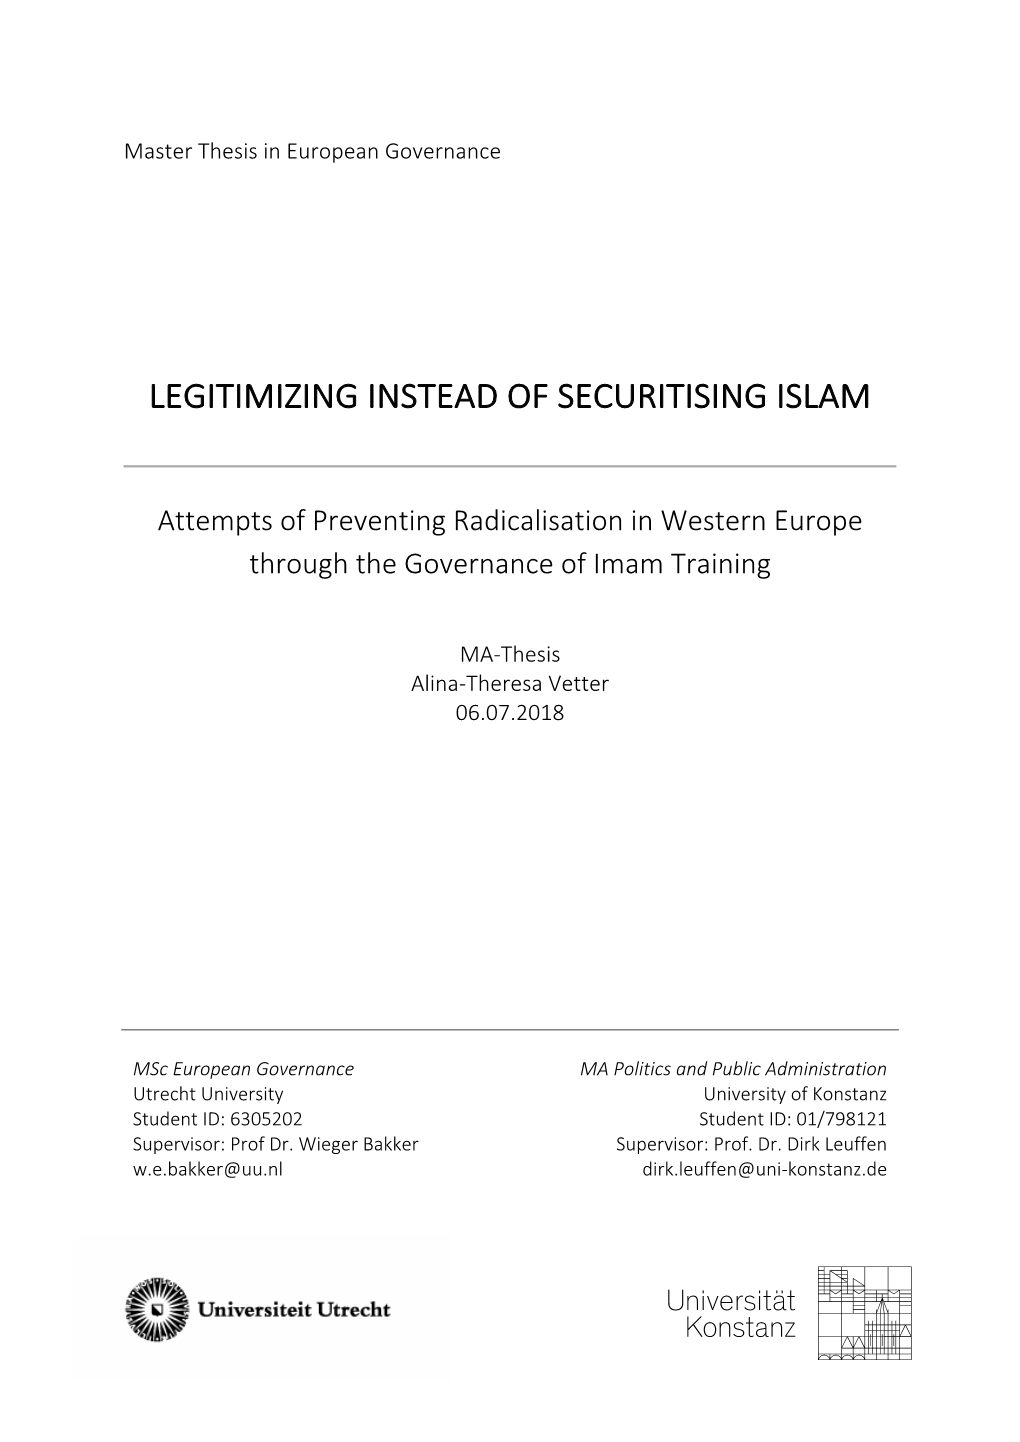 Legitimizing Instead of Securitising Islam